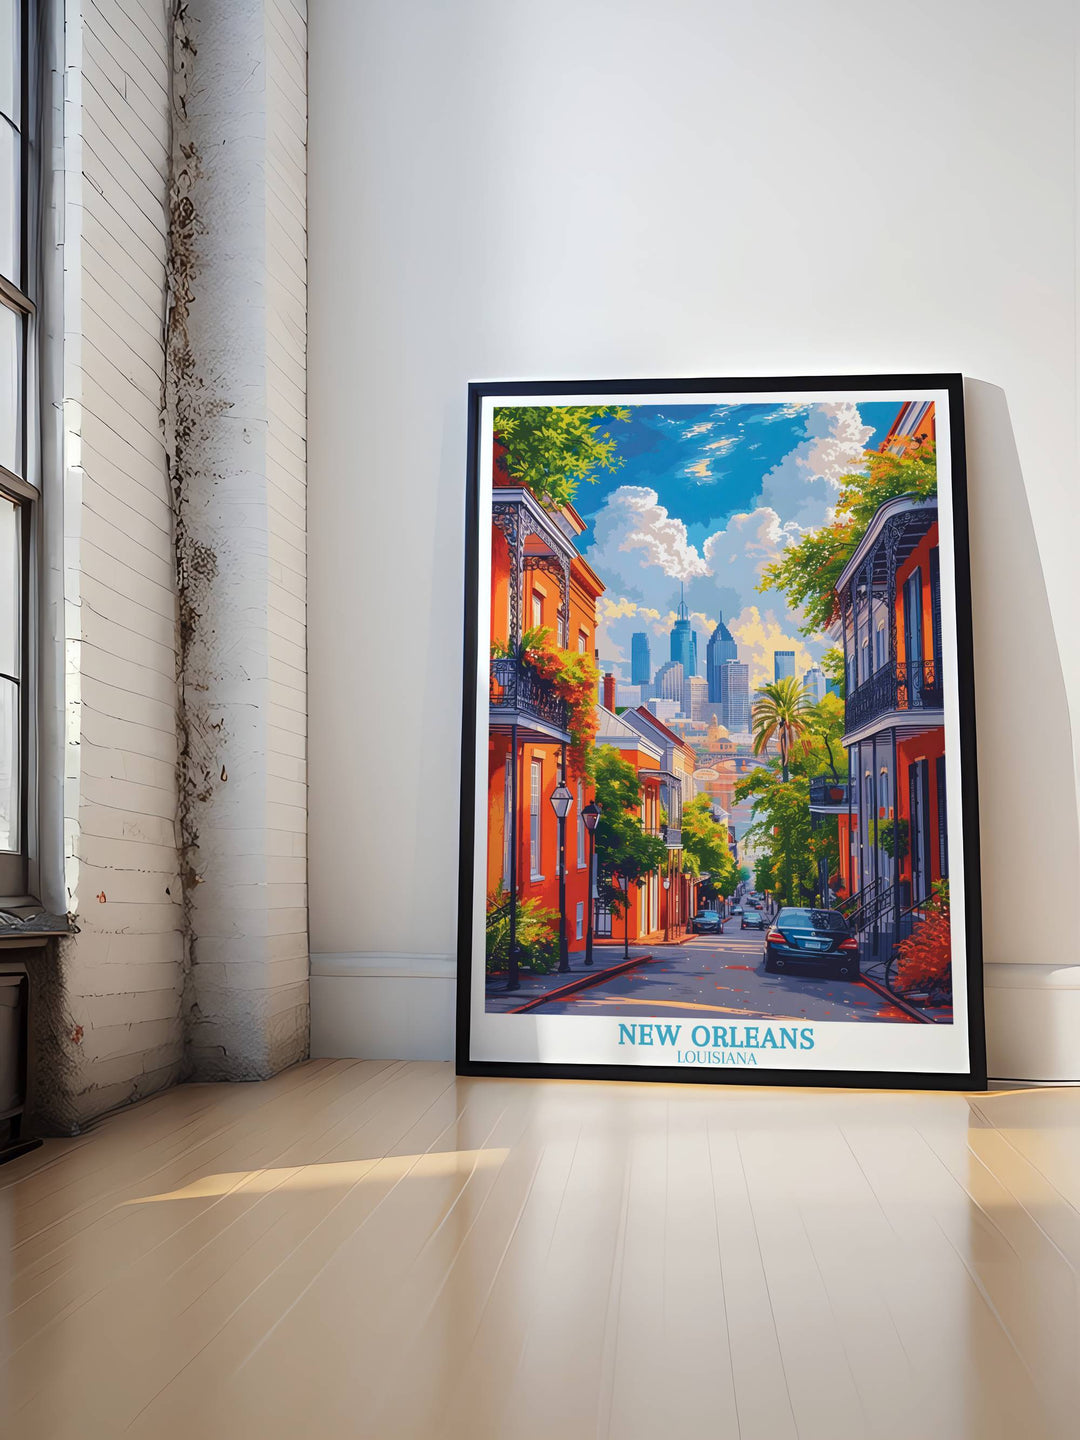 Impression de voyage de la Nouvelle-Orléans - Cadeau d’affiche de voyage pour la Nouvelle-Orléans 